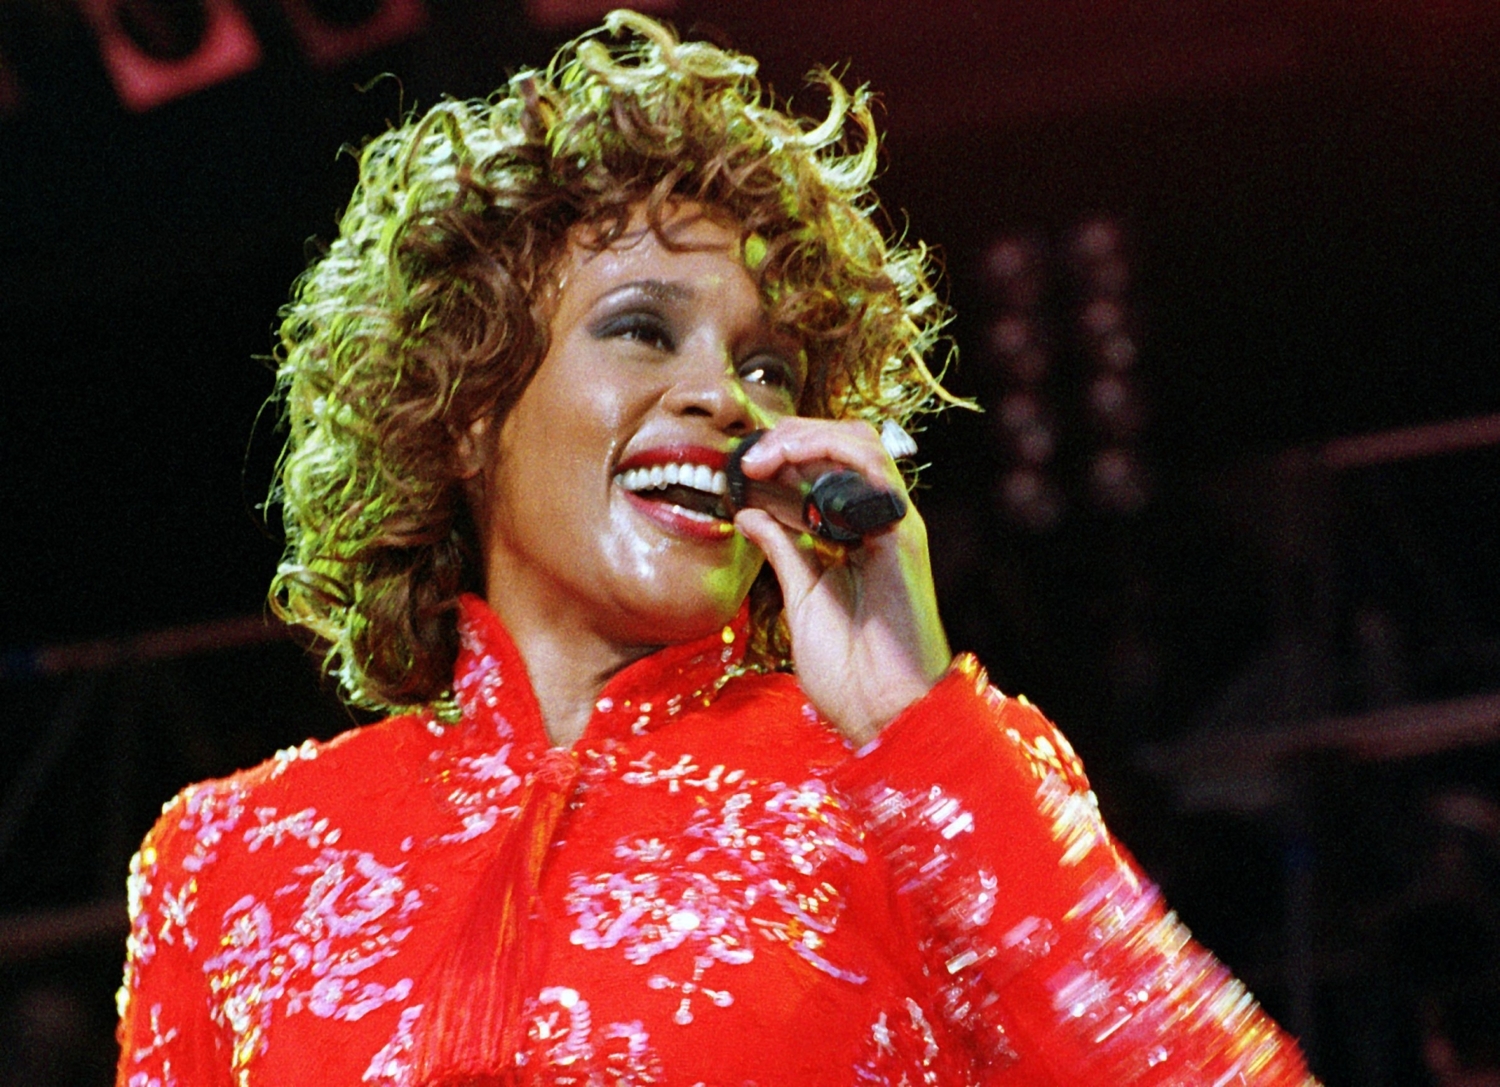 Whitney Houston do světa hudby vstoupila v osmdesátých letech a brzy se ustálila jako jedna z nejlepších zpěvaček všech dob. Její fenomenální hlas jí vysloužil celkem 7 cen Grammy,. Zemřela na utonutí 11. února 2012 ve věku 48 let.